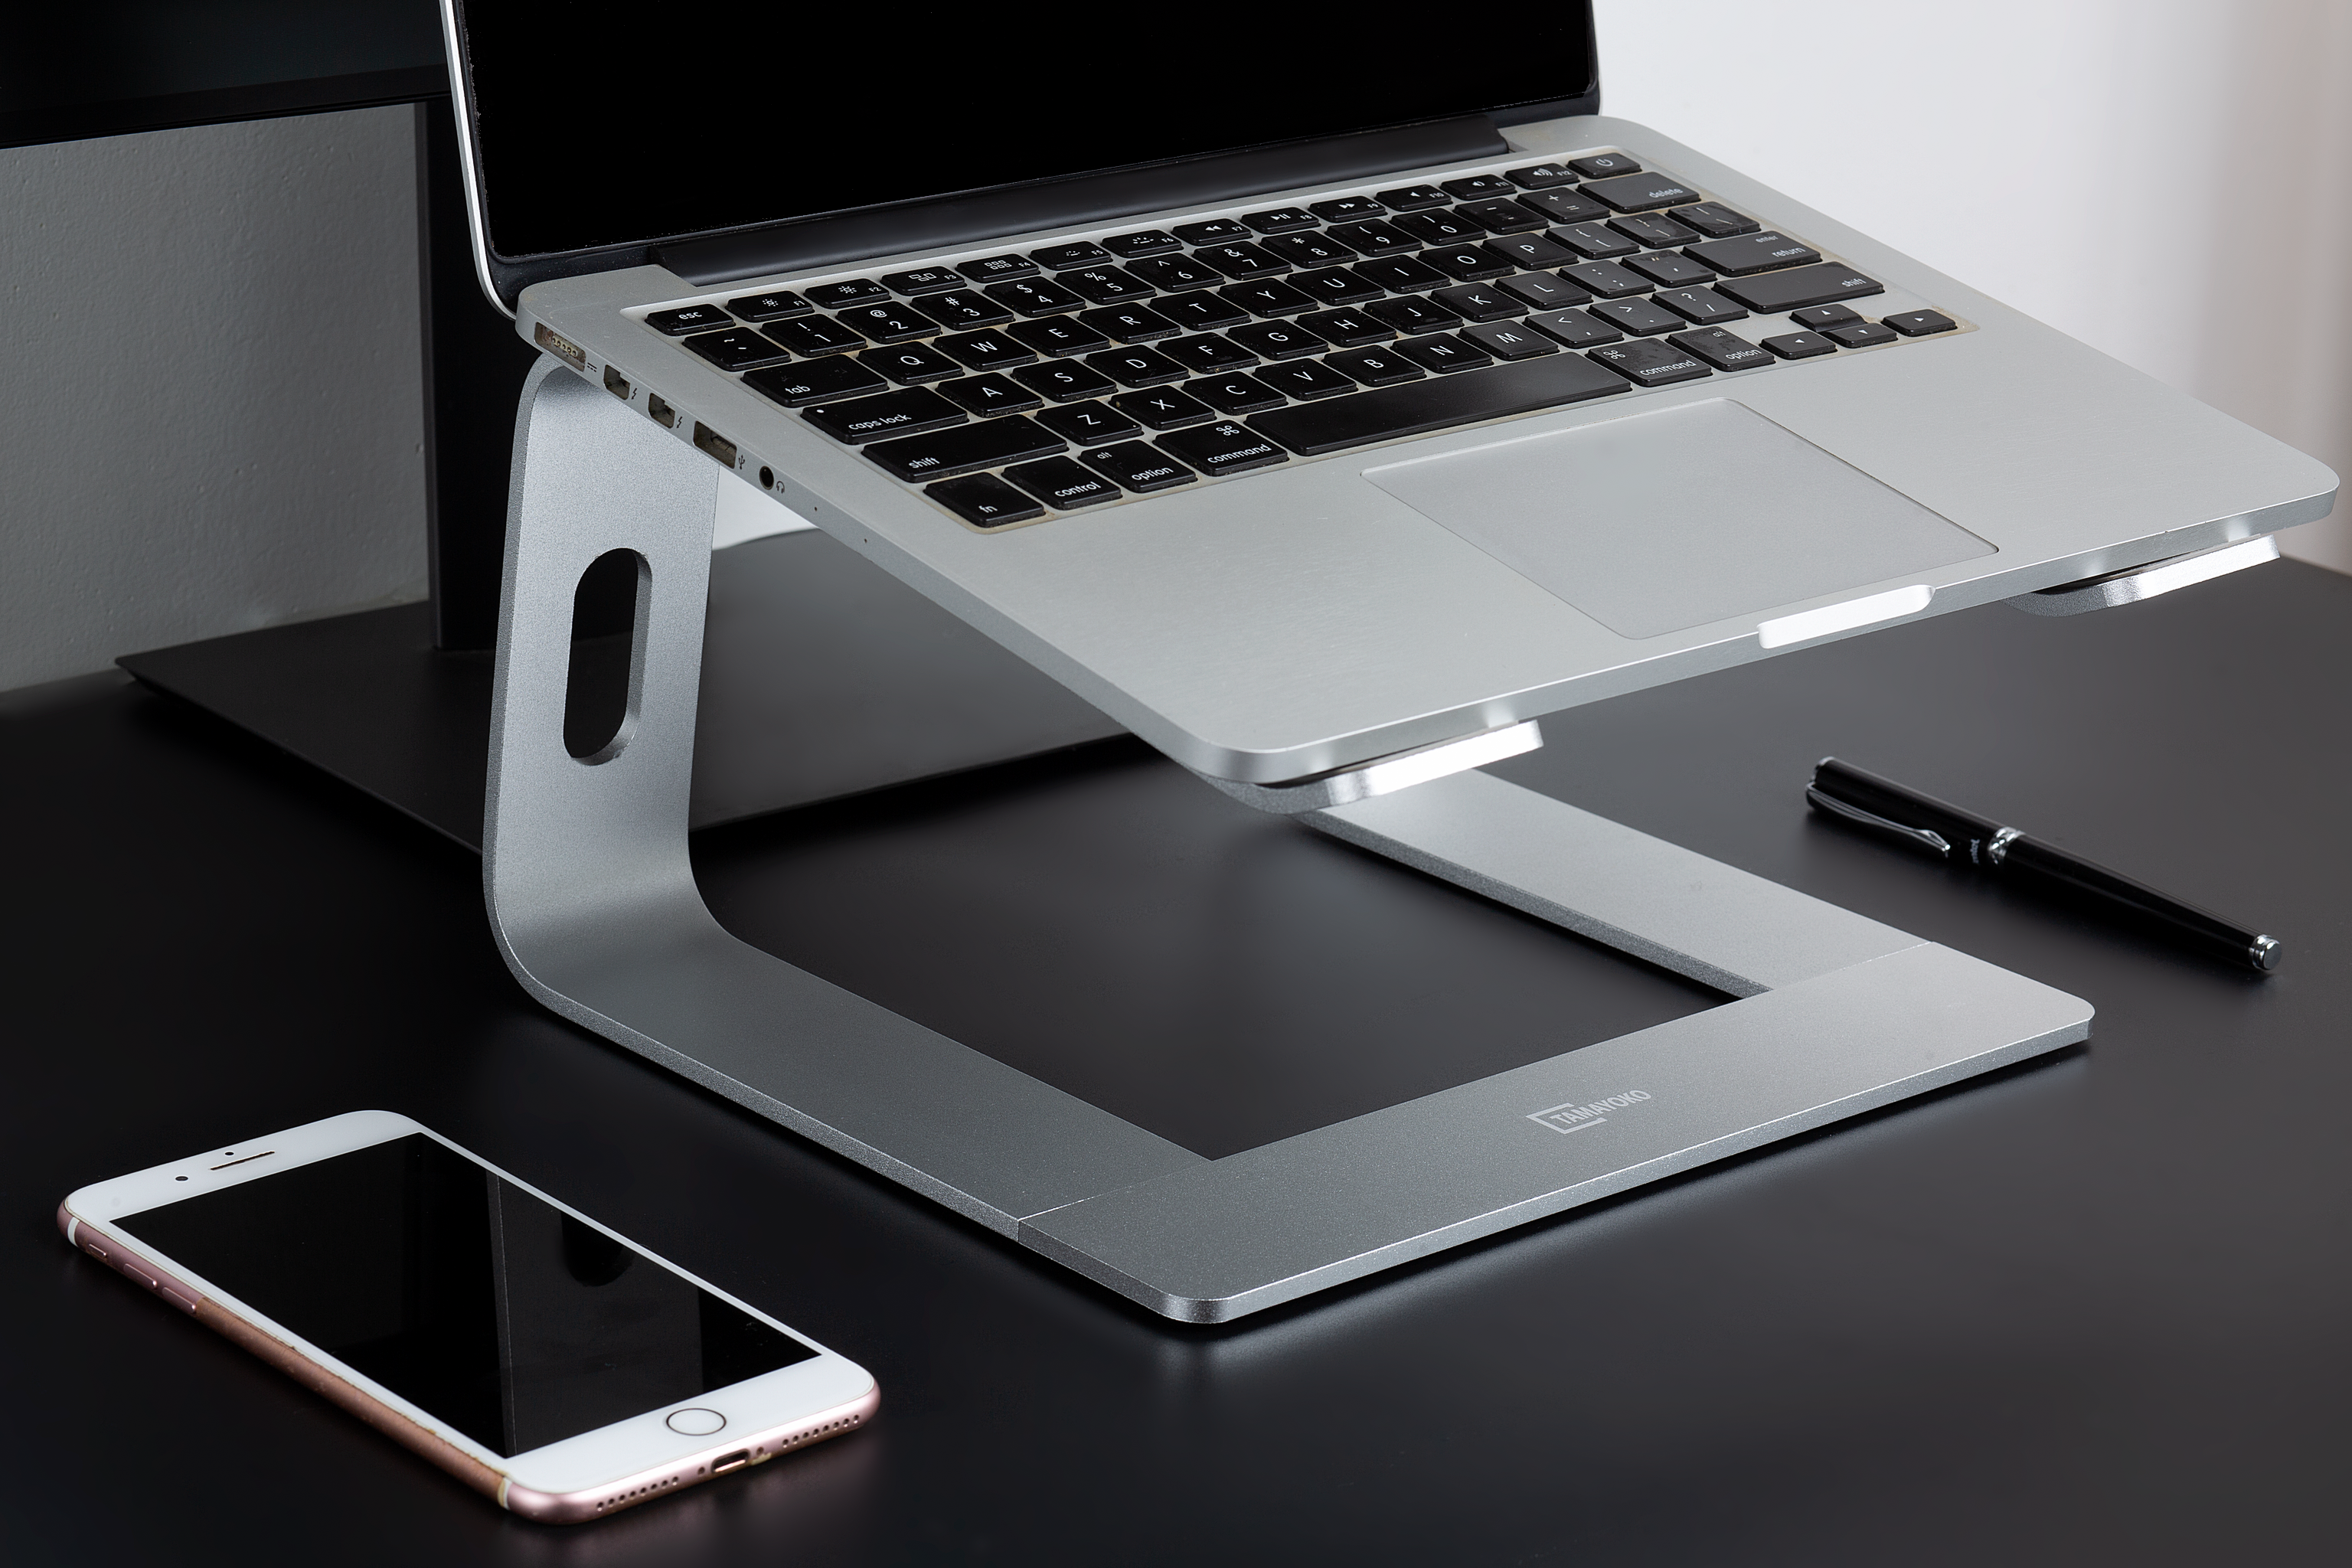 Giá Đỡ Máy Tính Laptop Macbook Besti BTY01 Hợp Kim Nhôm Cao Cấp Giúp Tản Nhiệt Có Thể Tháo Rời - Hàng Chính Hãng 